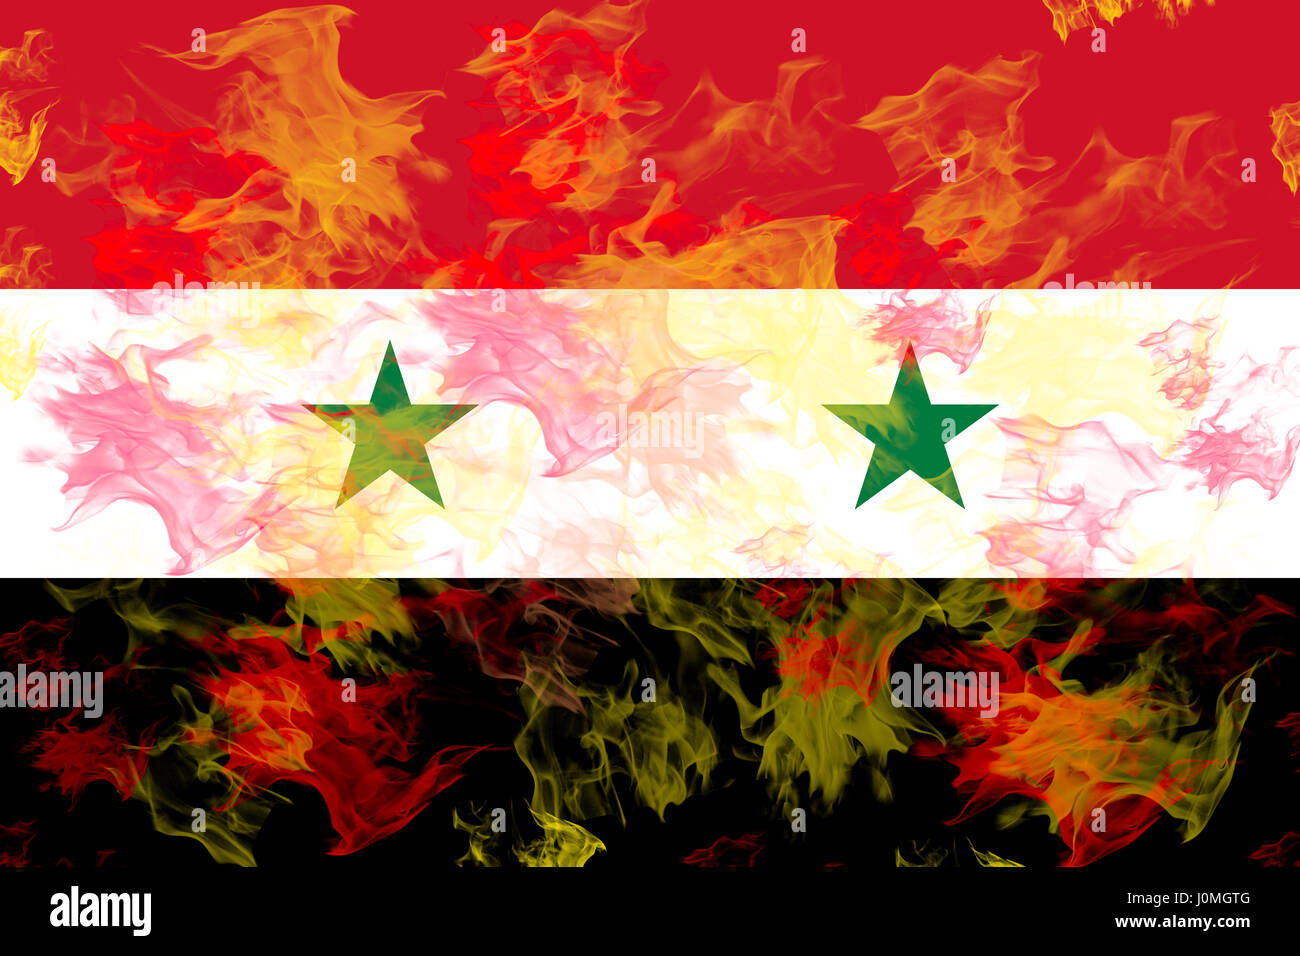 Abbildung der Flagge Syriens in Flammen. Stockfoto